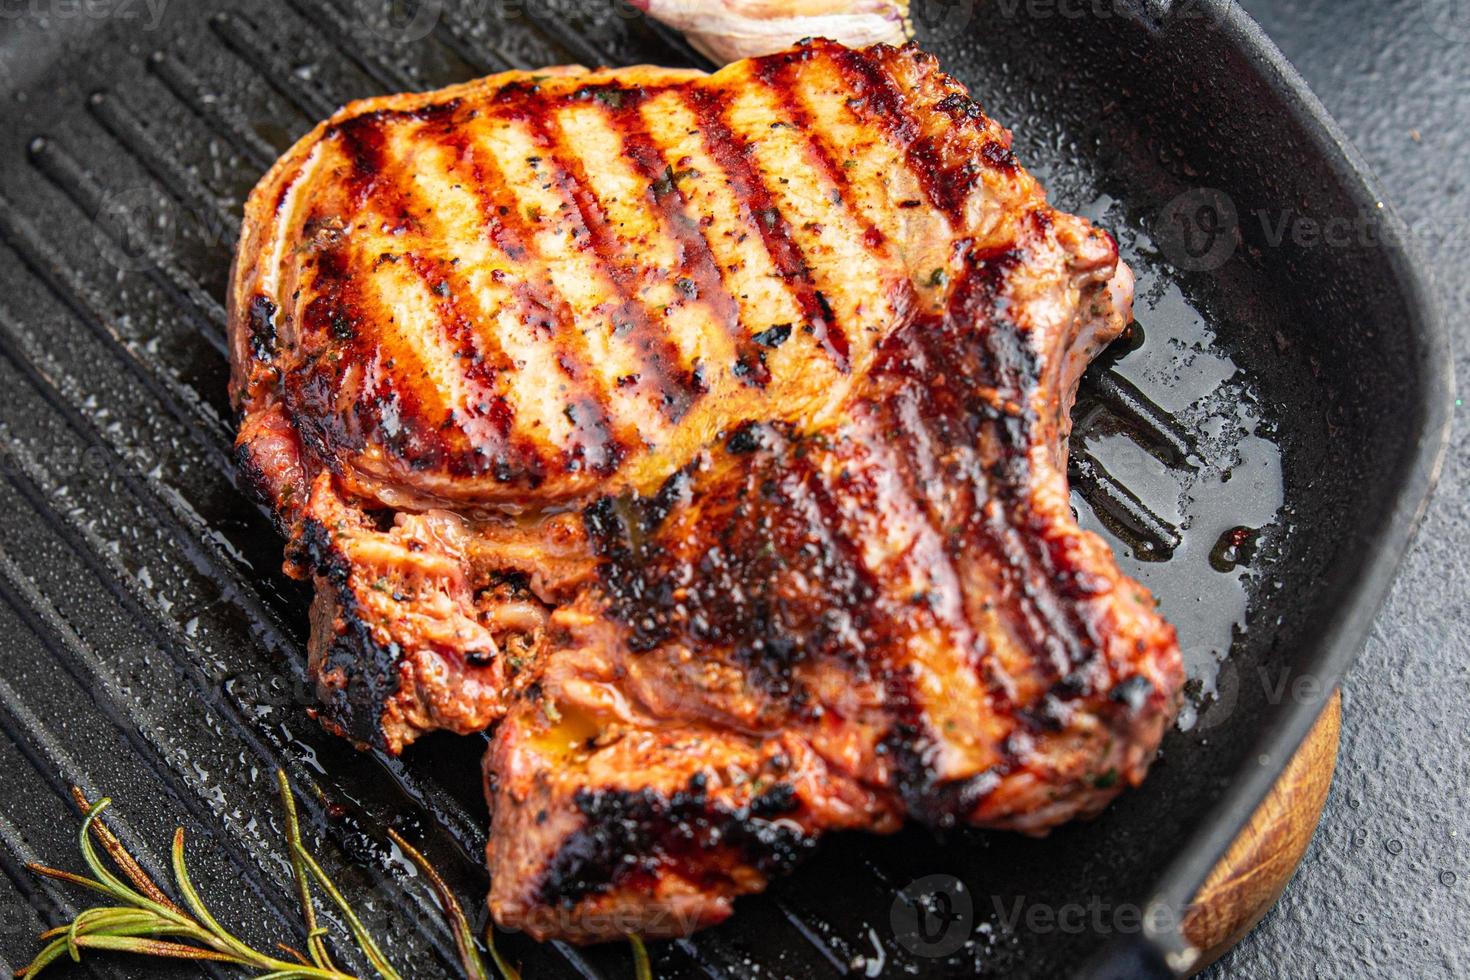 viande steak gril porc frit boeuf sain frais repas nourriture photo